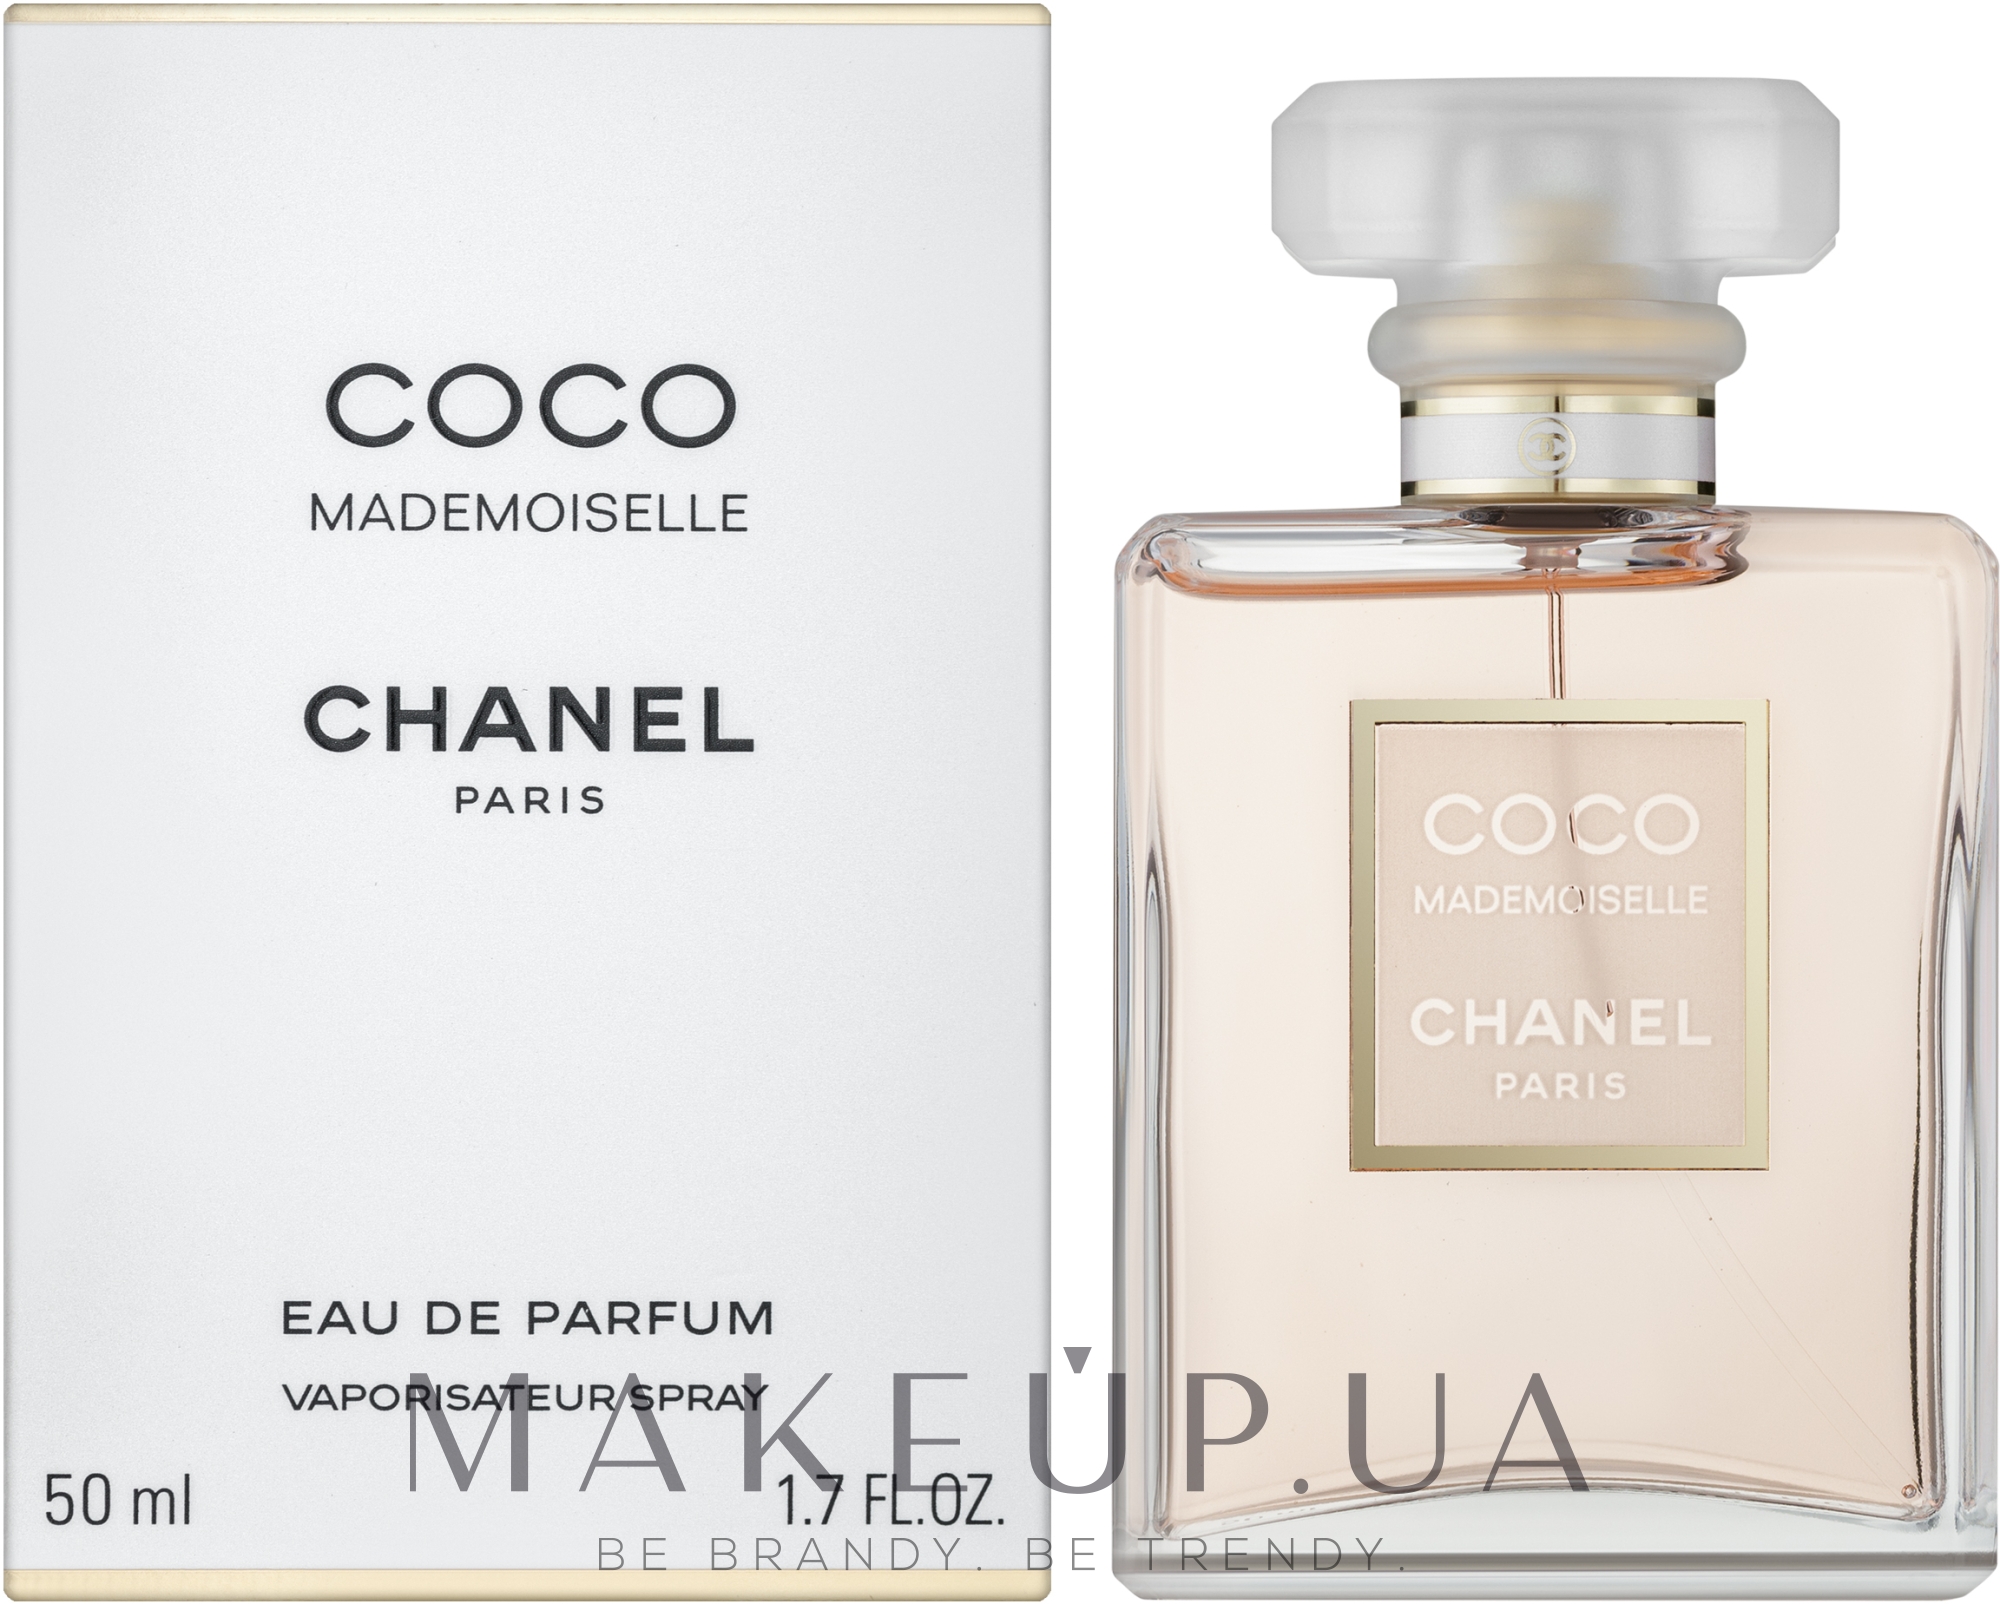 Chanel Coco Mademoiselle The Body Oil  Масло для тела купить по лучшей  цене в Украине  Makeupua